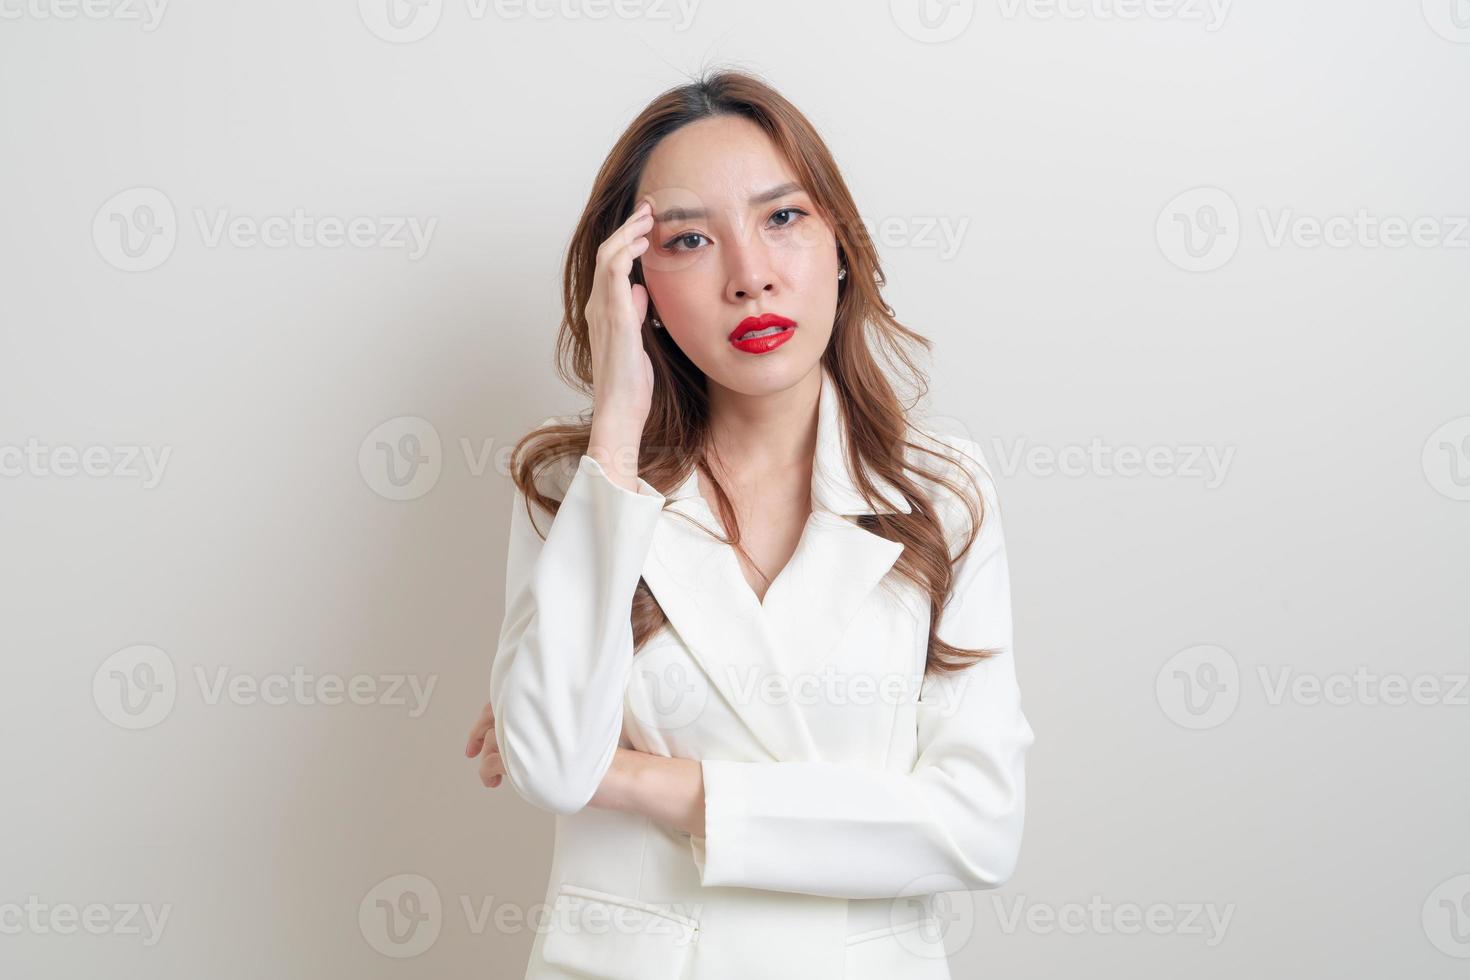 Retrato de una bella mujer enojada, estresada, preocupada o quejándose foto